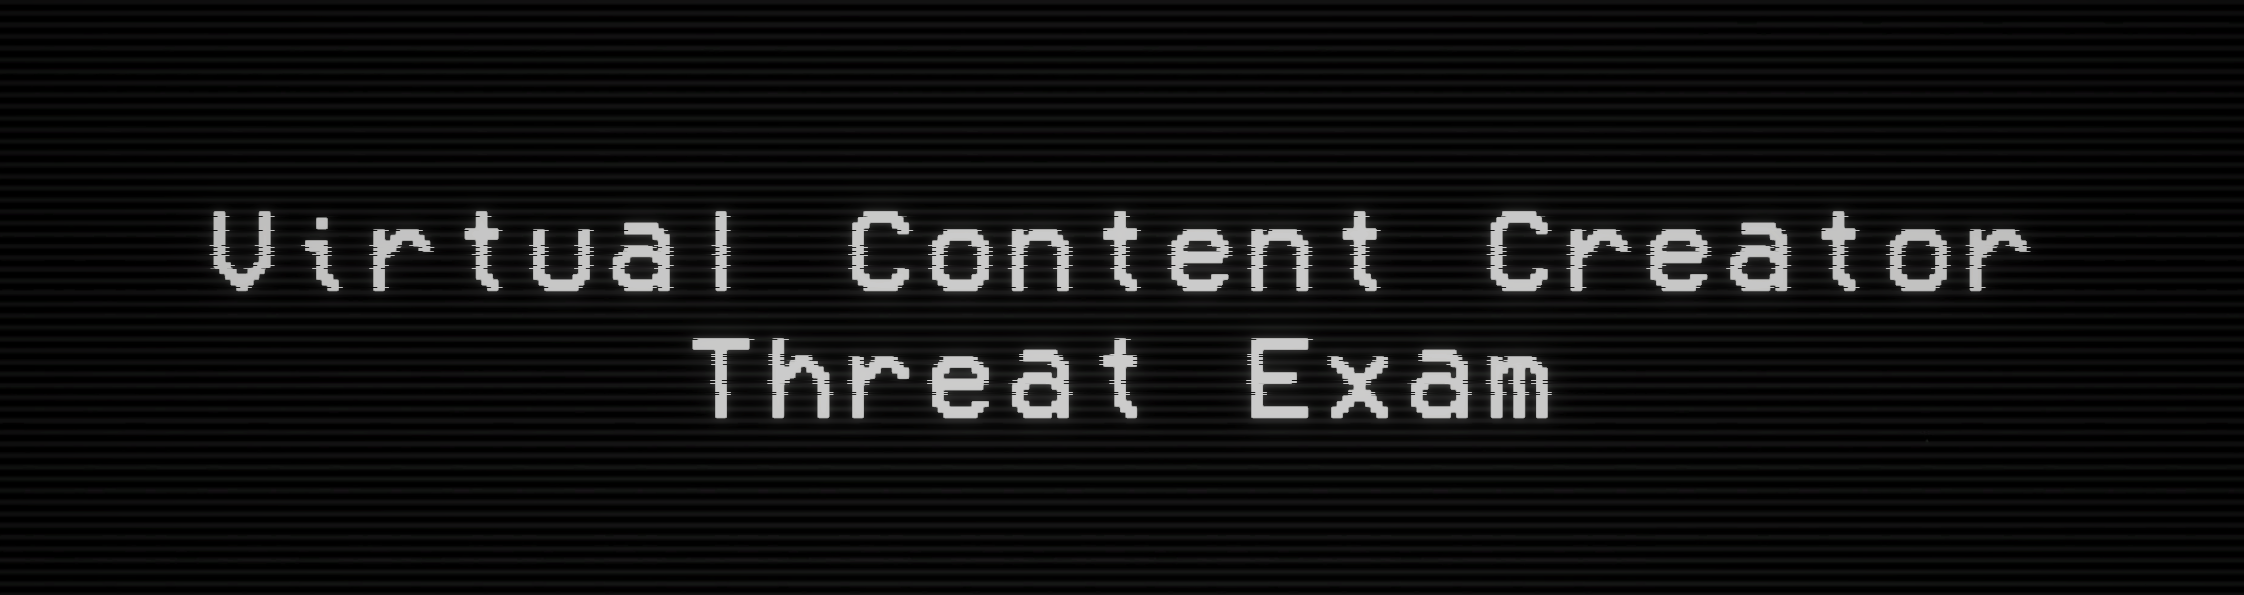 Virtual Content Creator Threat Exam